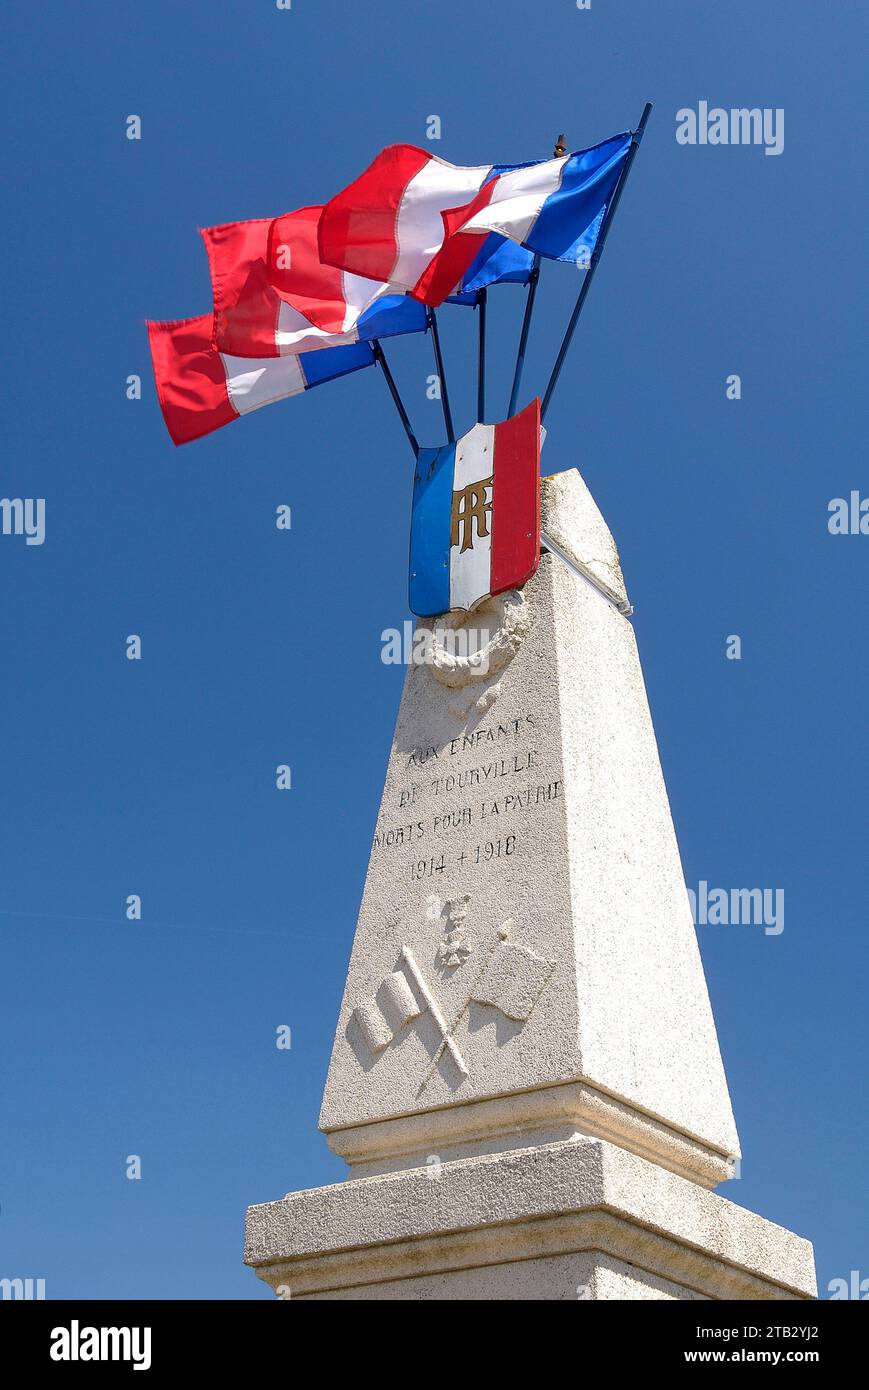 Memoriale di guerra con bandiere francesi in occasione della cerimonia di commemorazione dell'armistizio dell'8 maggio 1945. Bandiera francese a tre colori, blu, bianco A. Foto Stock